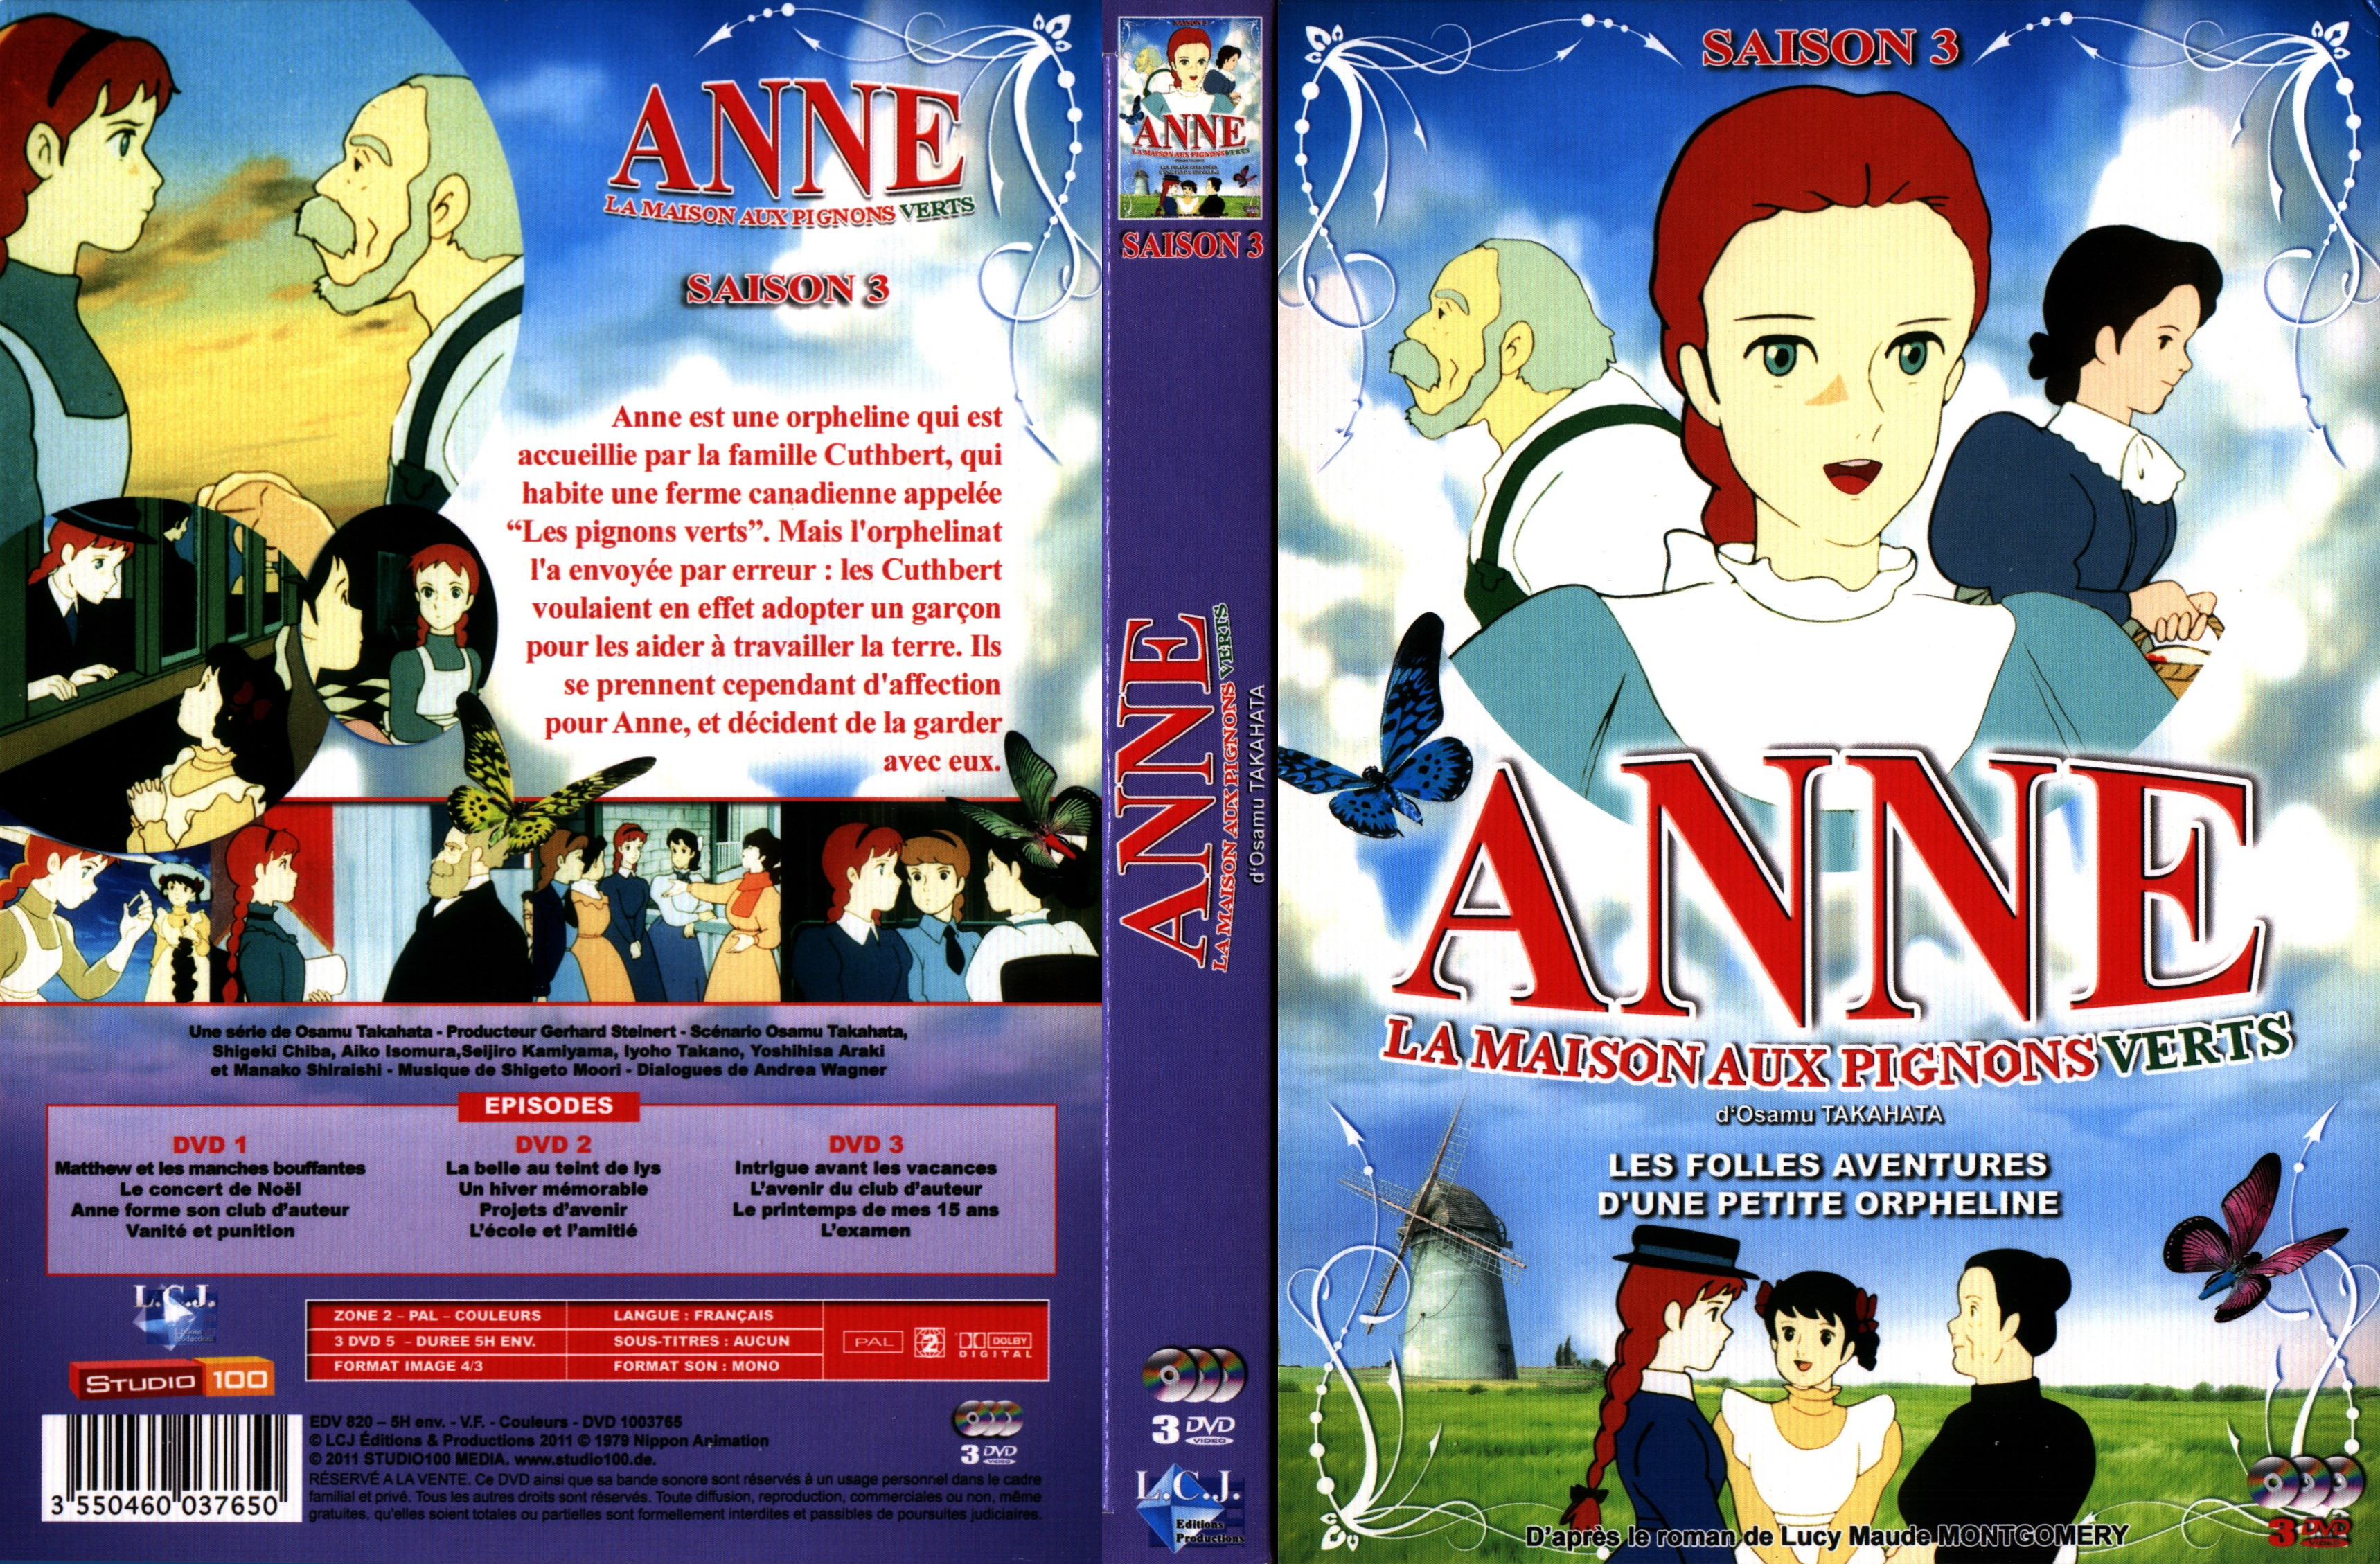 Jaquette DVD Anne - La Maison aux Pignons Verts Saison 3